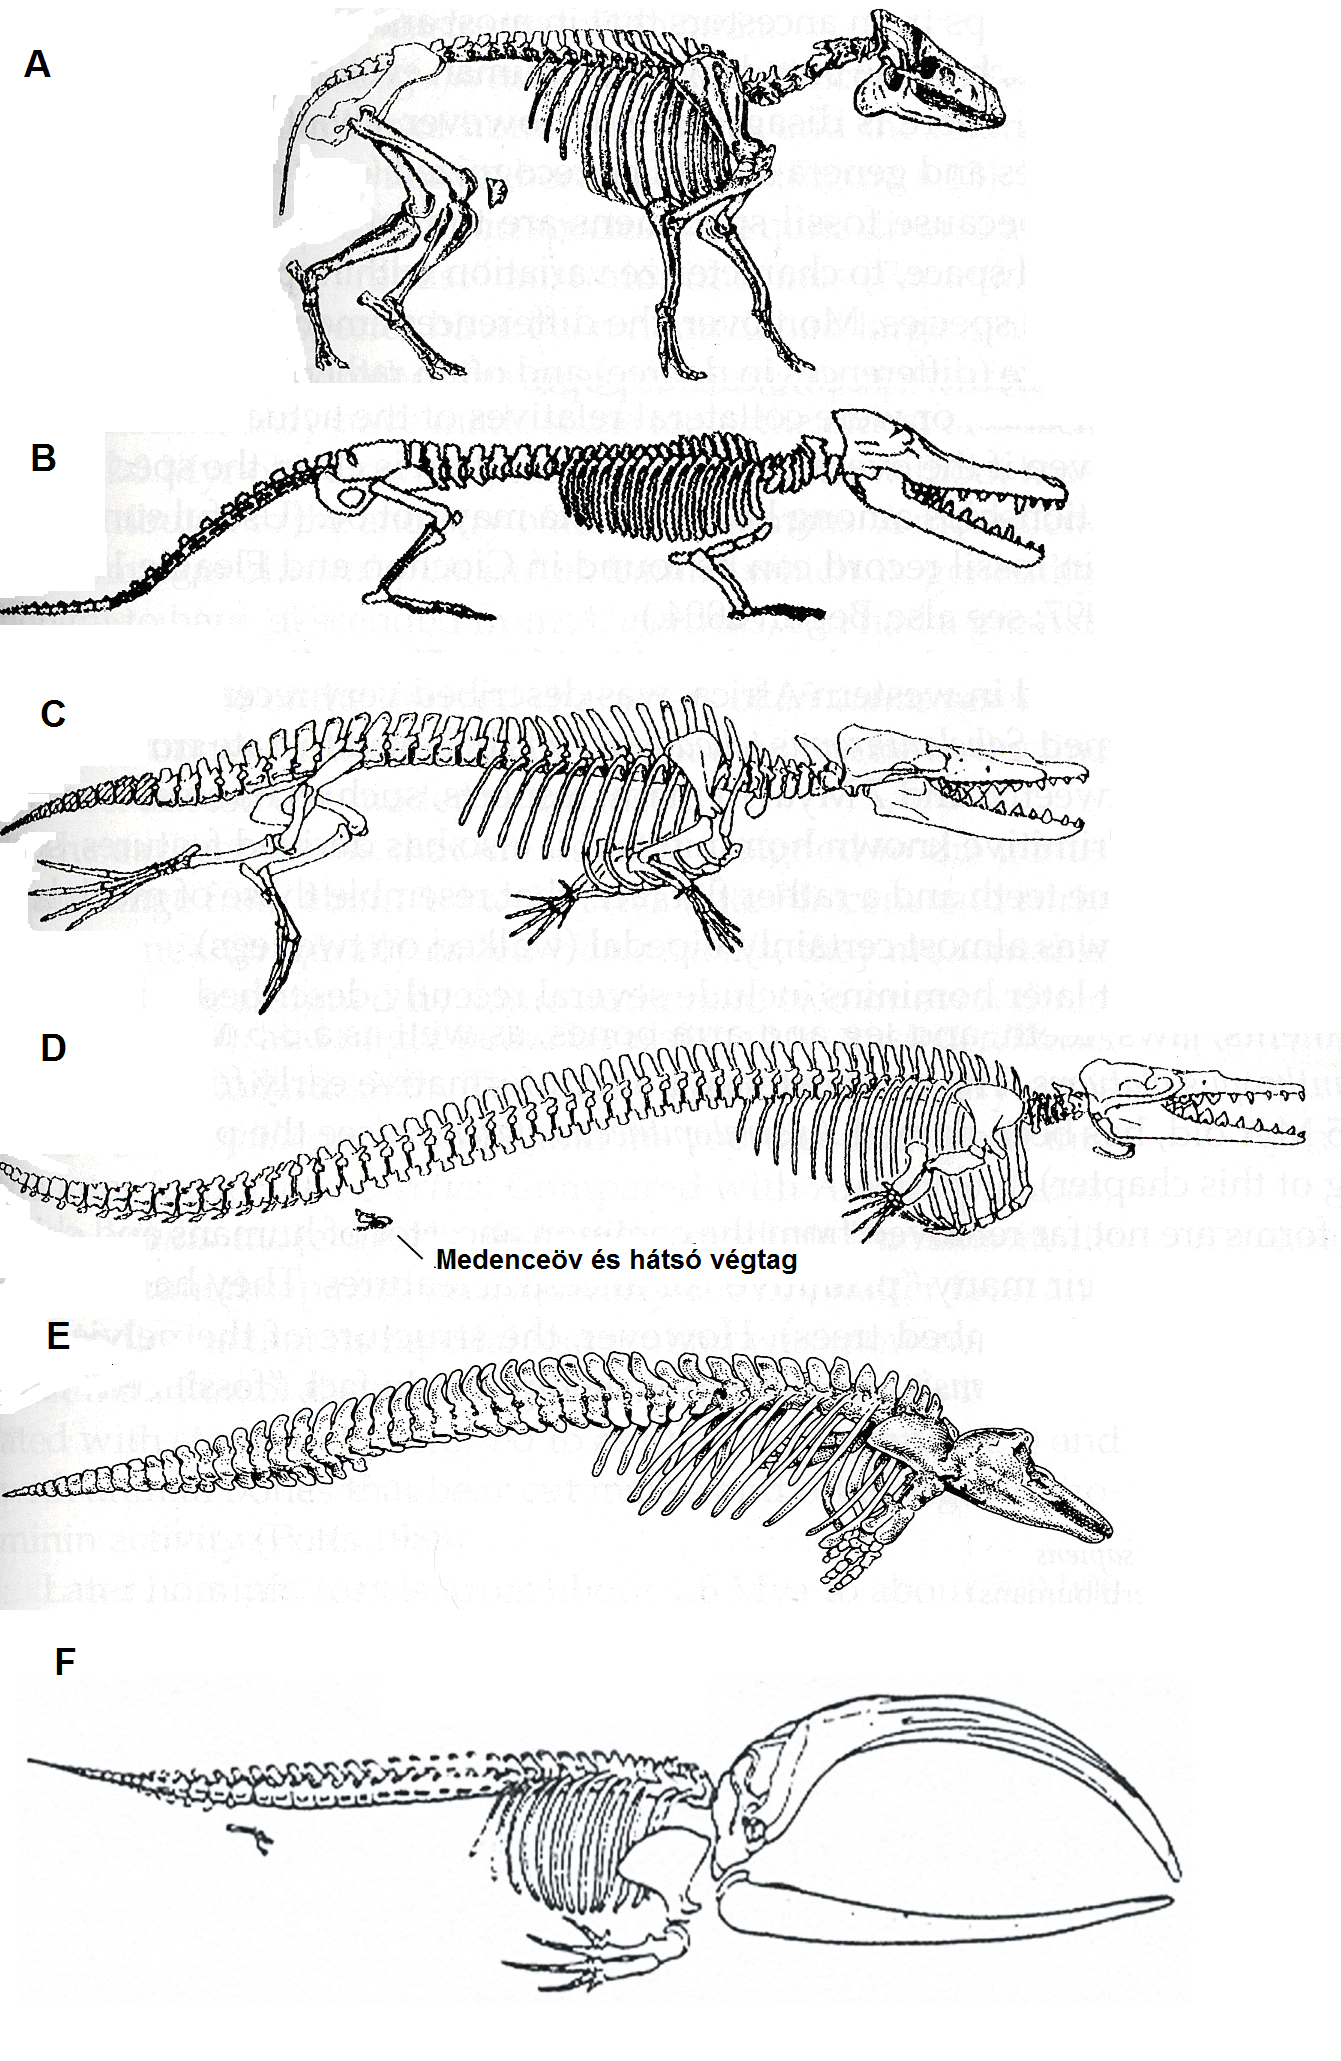 A bálnák fejlődésének valószínű stádiumai. A: A vízilószerű, oligocénben élő Elomeryx párosujjú patáshoz hasonló lehetett a bálnák őse; B: A "kétéltű" életmódot élő Ambulocetus sekély vizeket lakott, lábait úszásra használta. Ujjai kis patákban végződtek; C: a középső eocénben élő Rhodocetus elsősorban a hátsó lábait használta úszásra, bokacsontjai még a párosujjú patásokéra emlékeztettek. A medenceöv gyenge volt, nem valószínű, hogy az állat szárazföldön huzamosabban mozoghatott; D: a Dorudon a középső-késő eocén időszakban már biztosan vízben élt, az előrehaladáshoz farkát használta, a medenceöv és a hátsó láb elvesztette kapcsolatát a gerincoszloppal, gyakorlatilag teljesen elcsökevényesedett; E: modern fogascet a Phocoena phocoena delfin. Orrlyukai már teljesen a fejtetőre tolódtak, hátsó végtagja teljesen eltűnt; F: recens sziláscet csontváza a medenceöv elcsökevényesedett maradványaival. (Gingerich, Muizon, Haver és Raff nyomán)